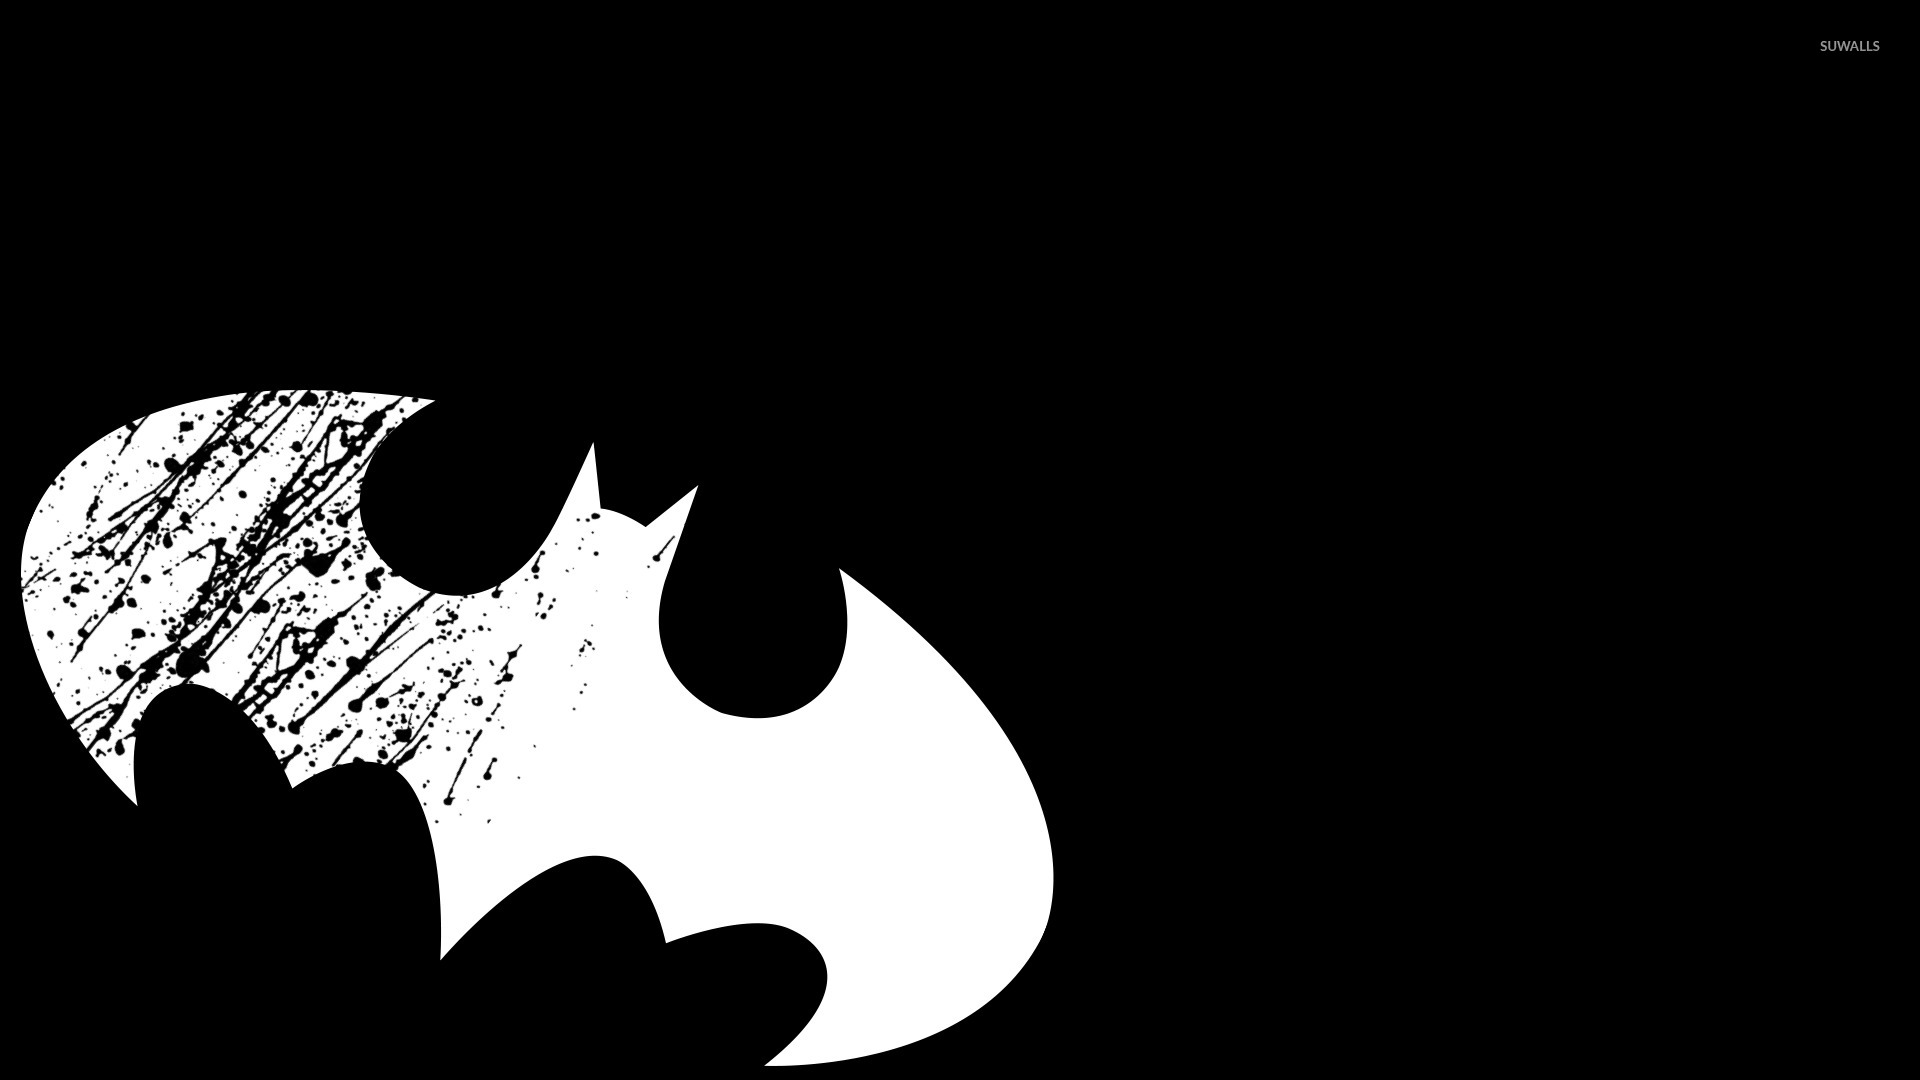 White Batman logo wallpaper - Comic wallpapers - #50045